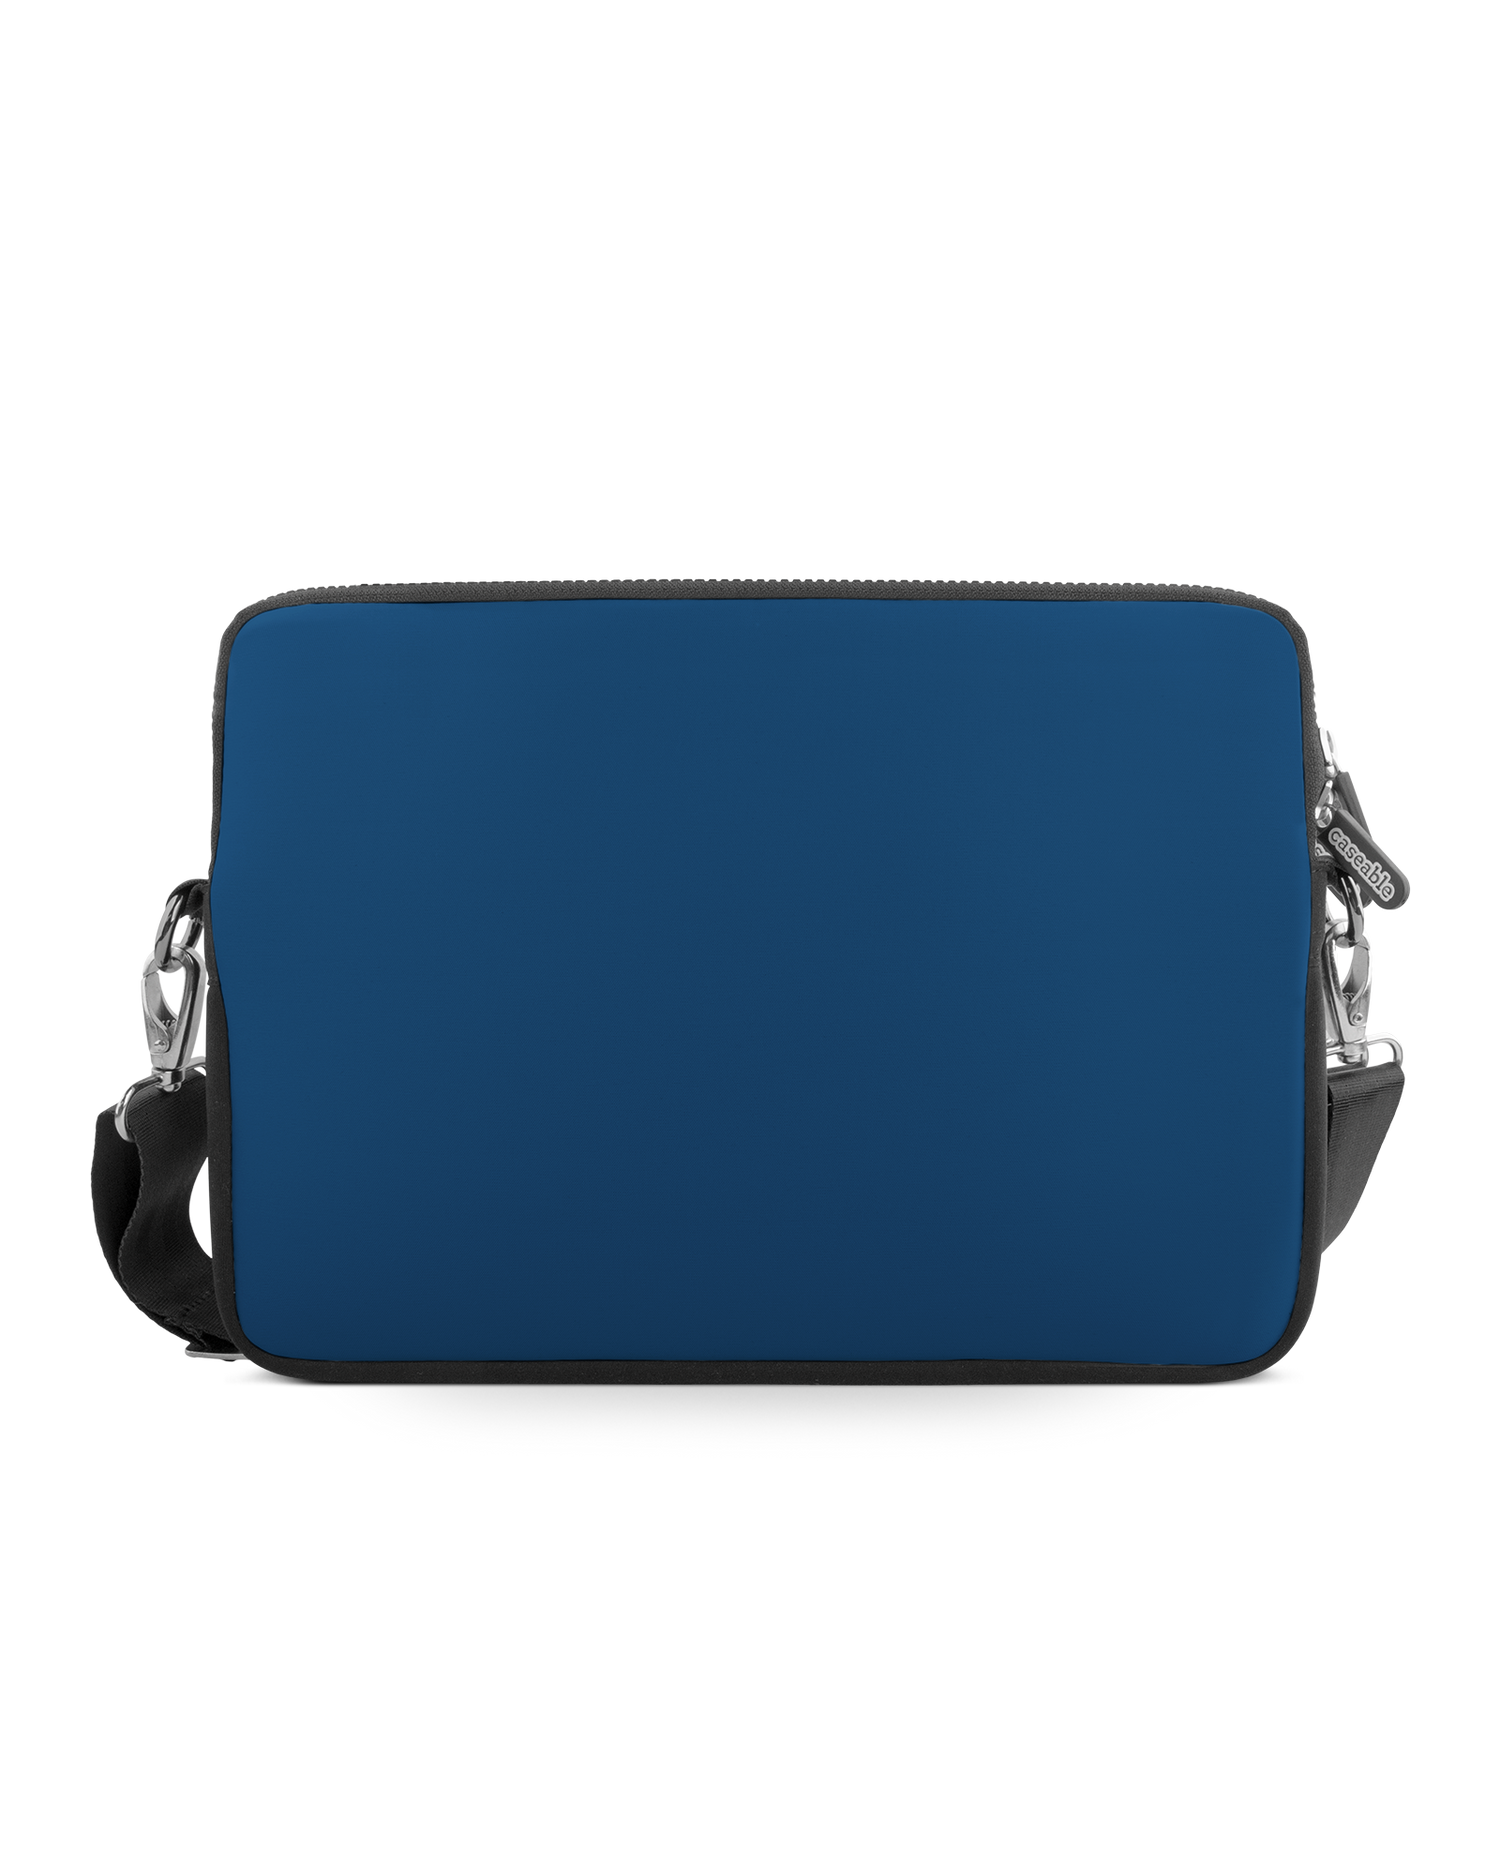 CLASSIC BLUE Premium Laptoptasche 13-14 Zoll: Vorderansicht